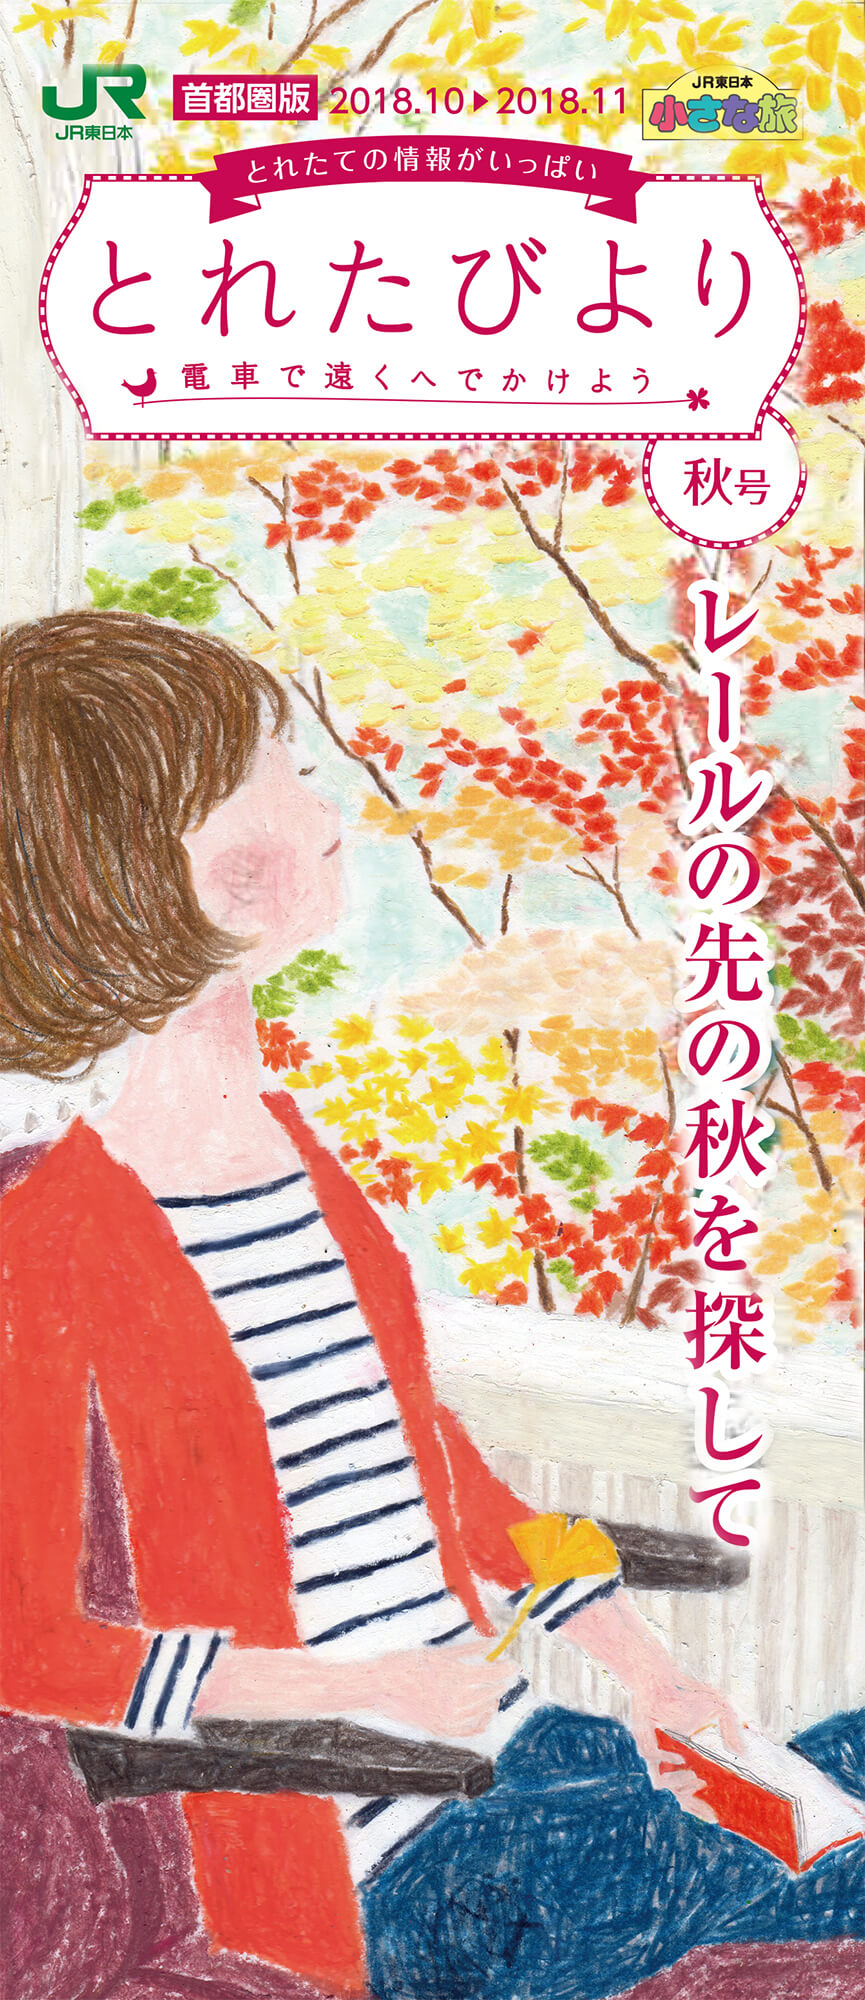 とれたびより秋号イラスト JR東日本 2018年「秋の旅行」